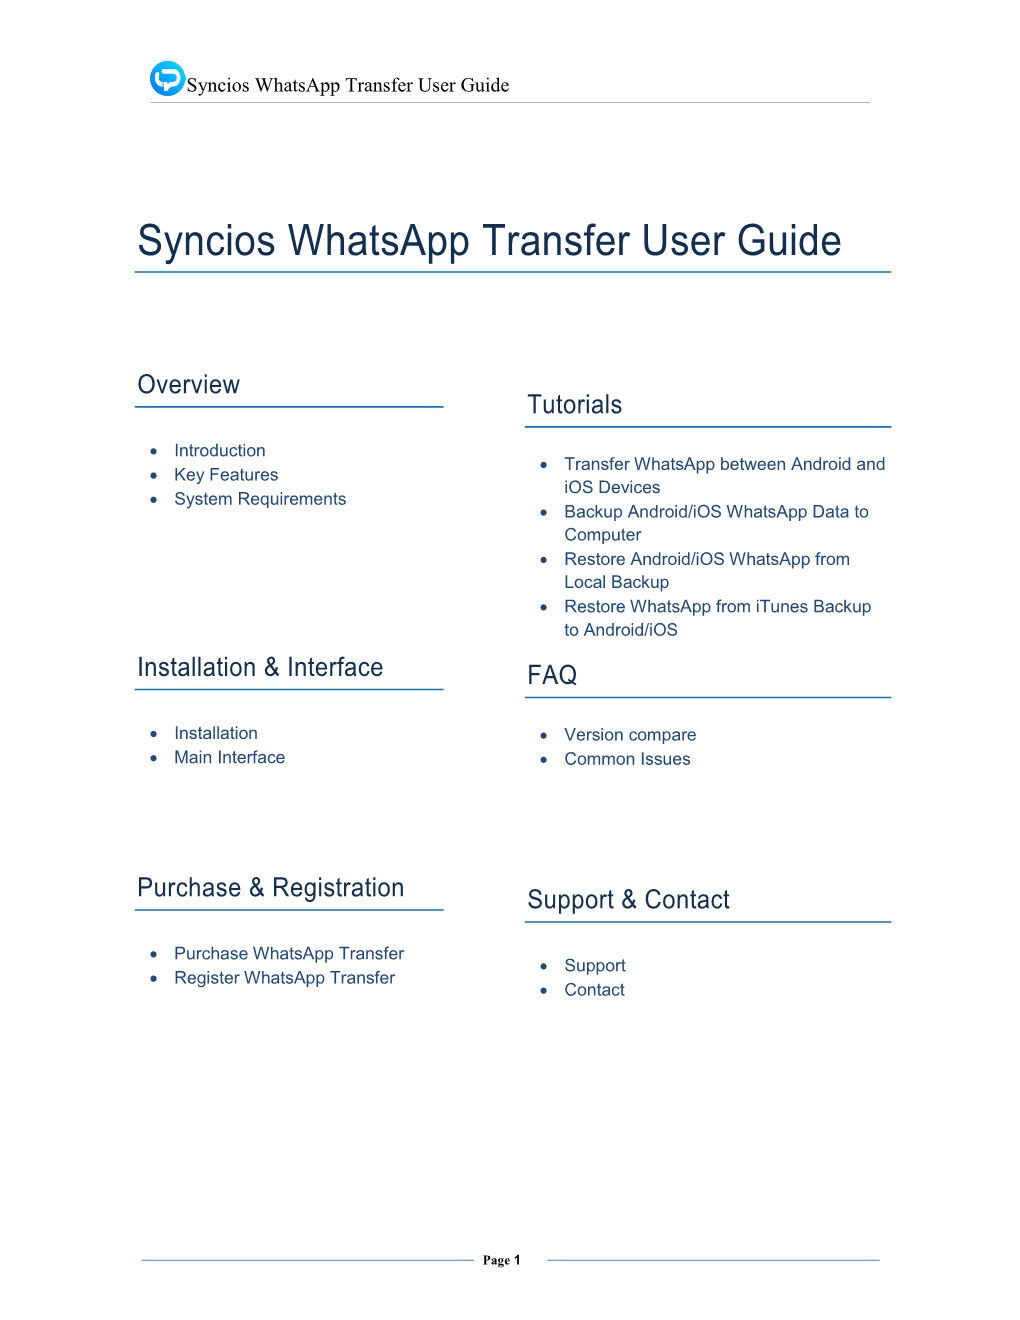 Syncios Whatsapp Transfer PDF Manual